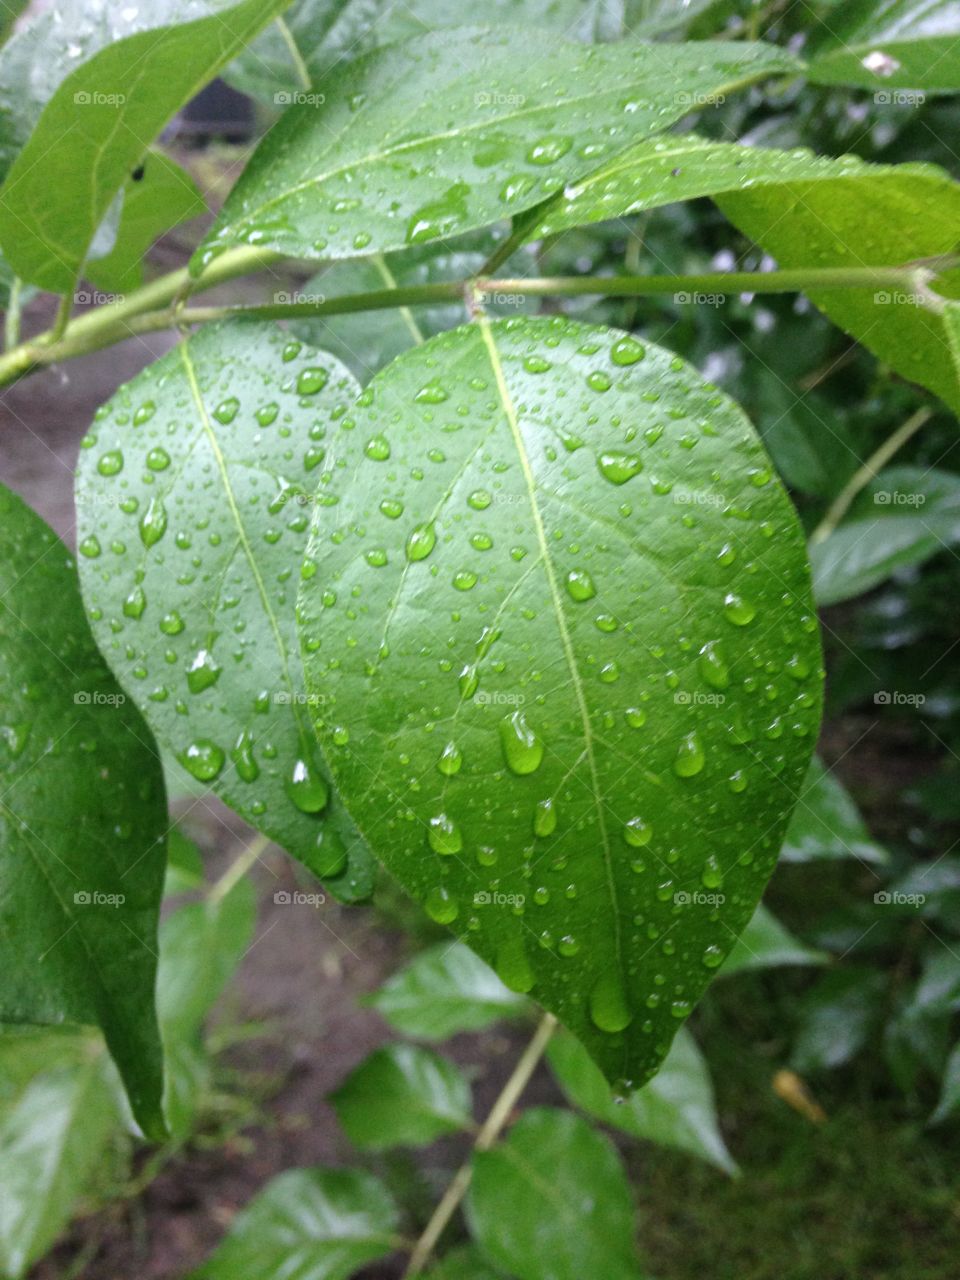 Rainy leaves 
